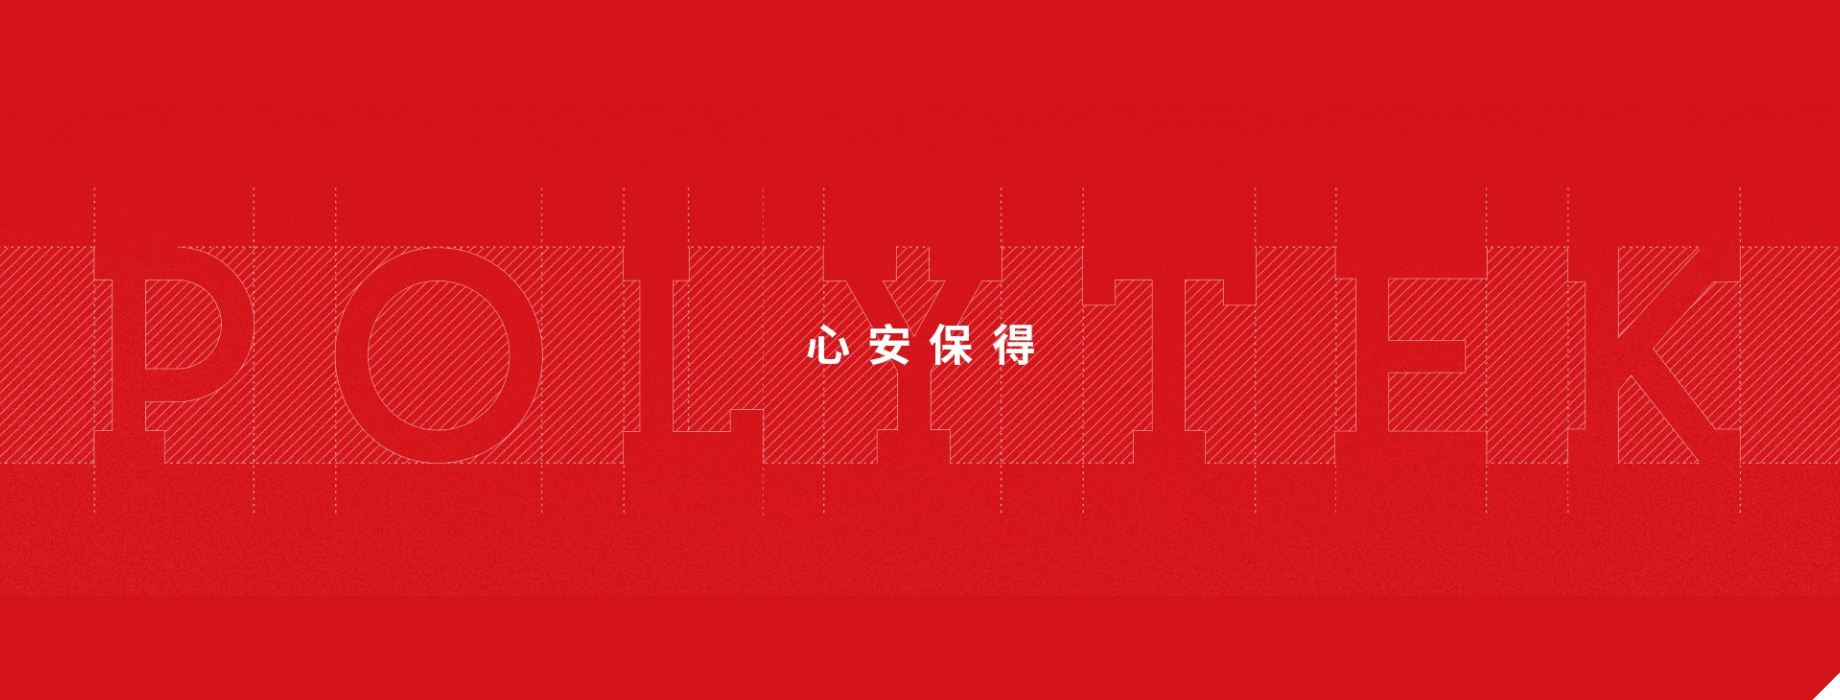 polytek slogan on red background